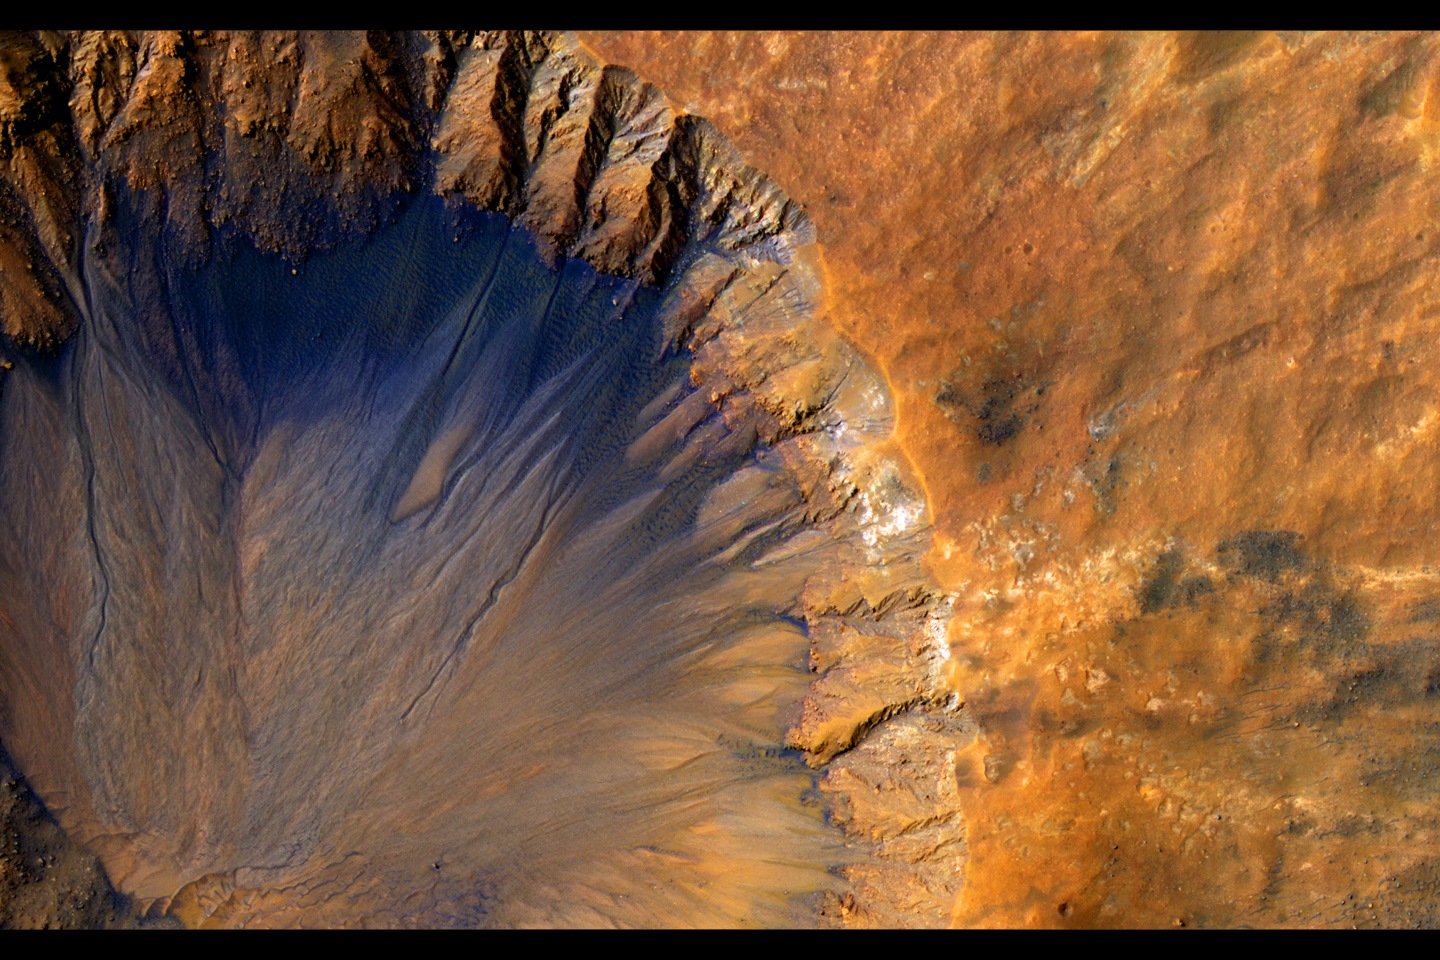 Камера HiRISE на борту Nasa Mars Reconnaissance Orbiter приобрела этот крупномасштабный образ «свежего» (в геологическом масштабе, хотя и довольно старого в человеческом масштабе) ударного кратера в регионе Сиренум Фосса на Марсе. Этот ударный кратер, шириной чуть больше 1 километра, выглядит относительно недавним, поскольку он имеет острый край и хорошо сохранившиеся выбросы.